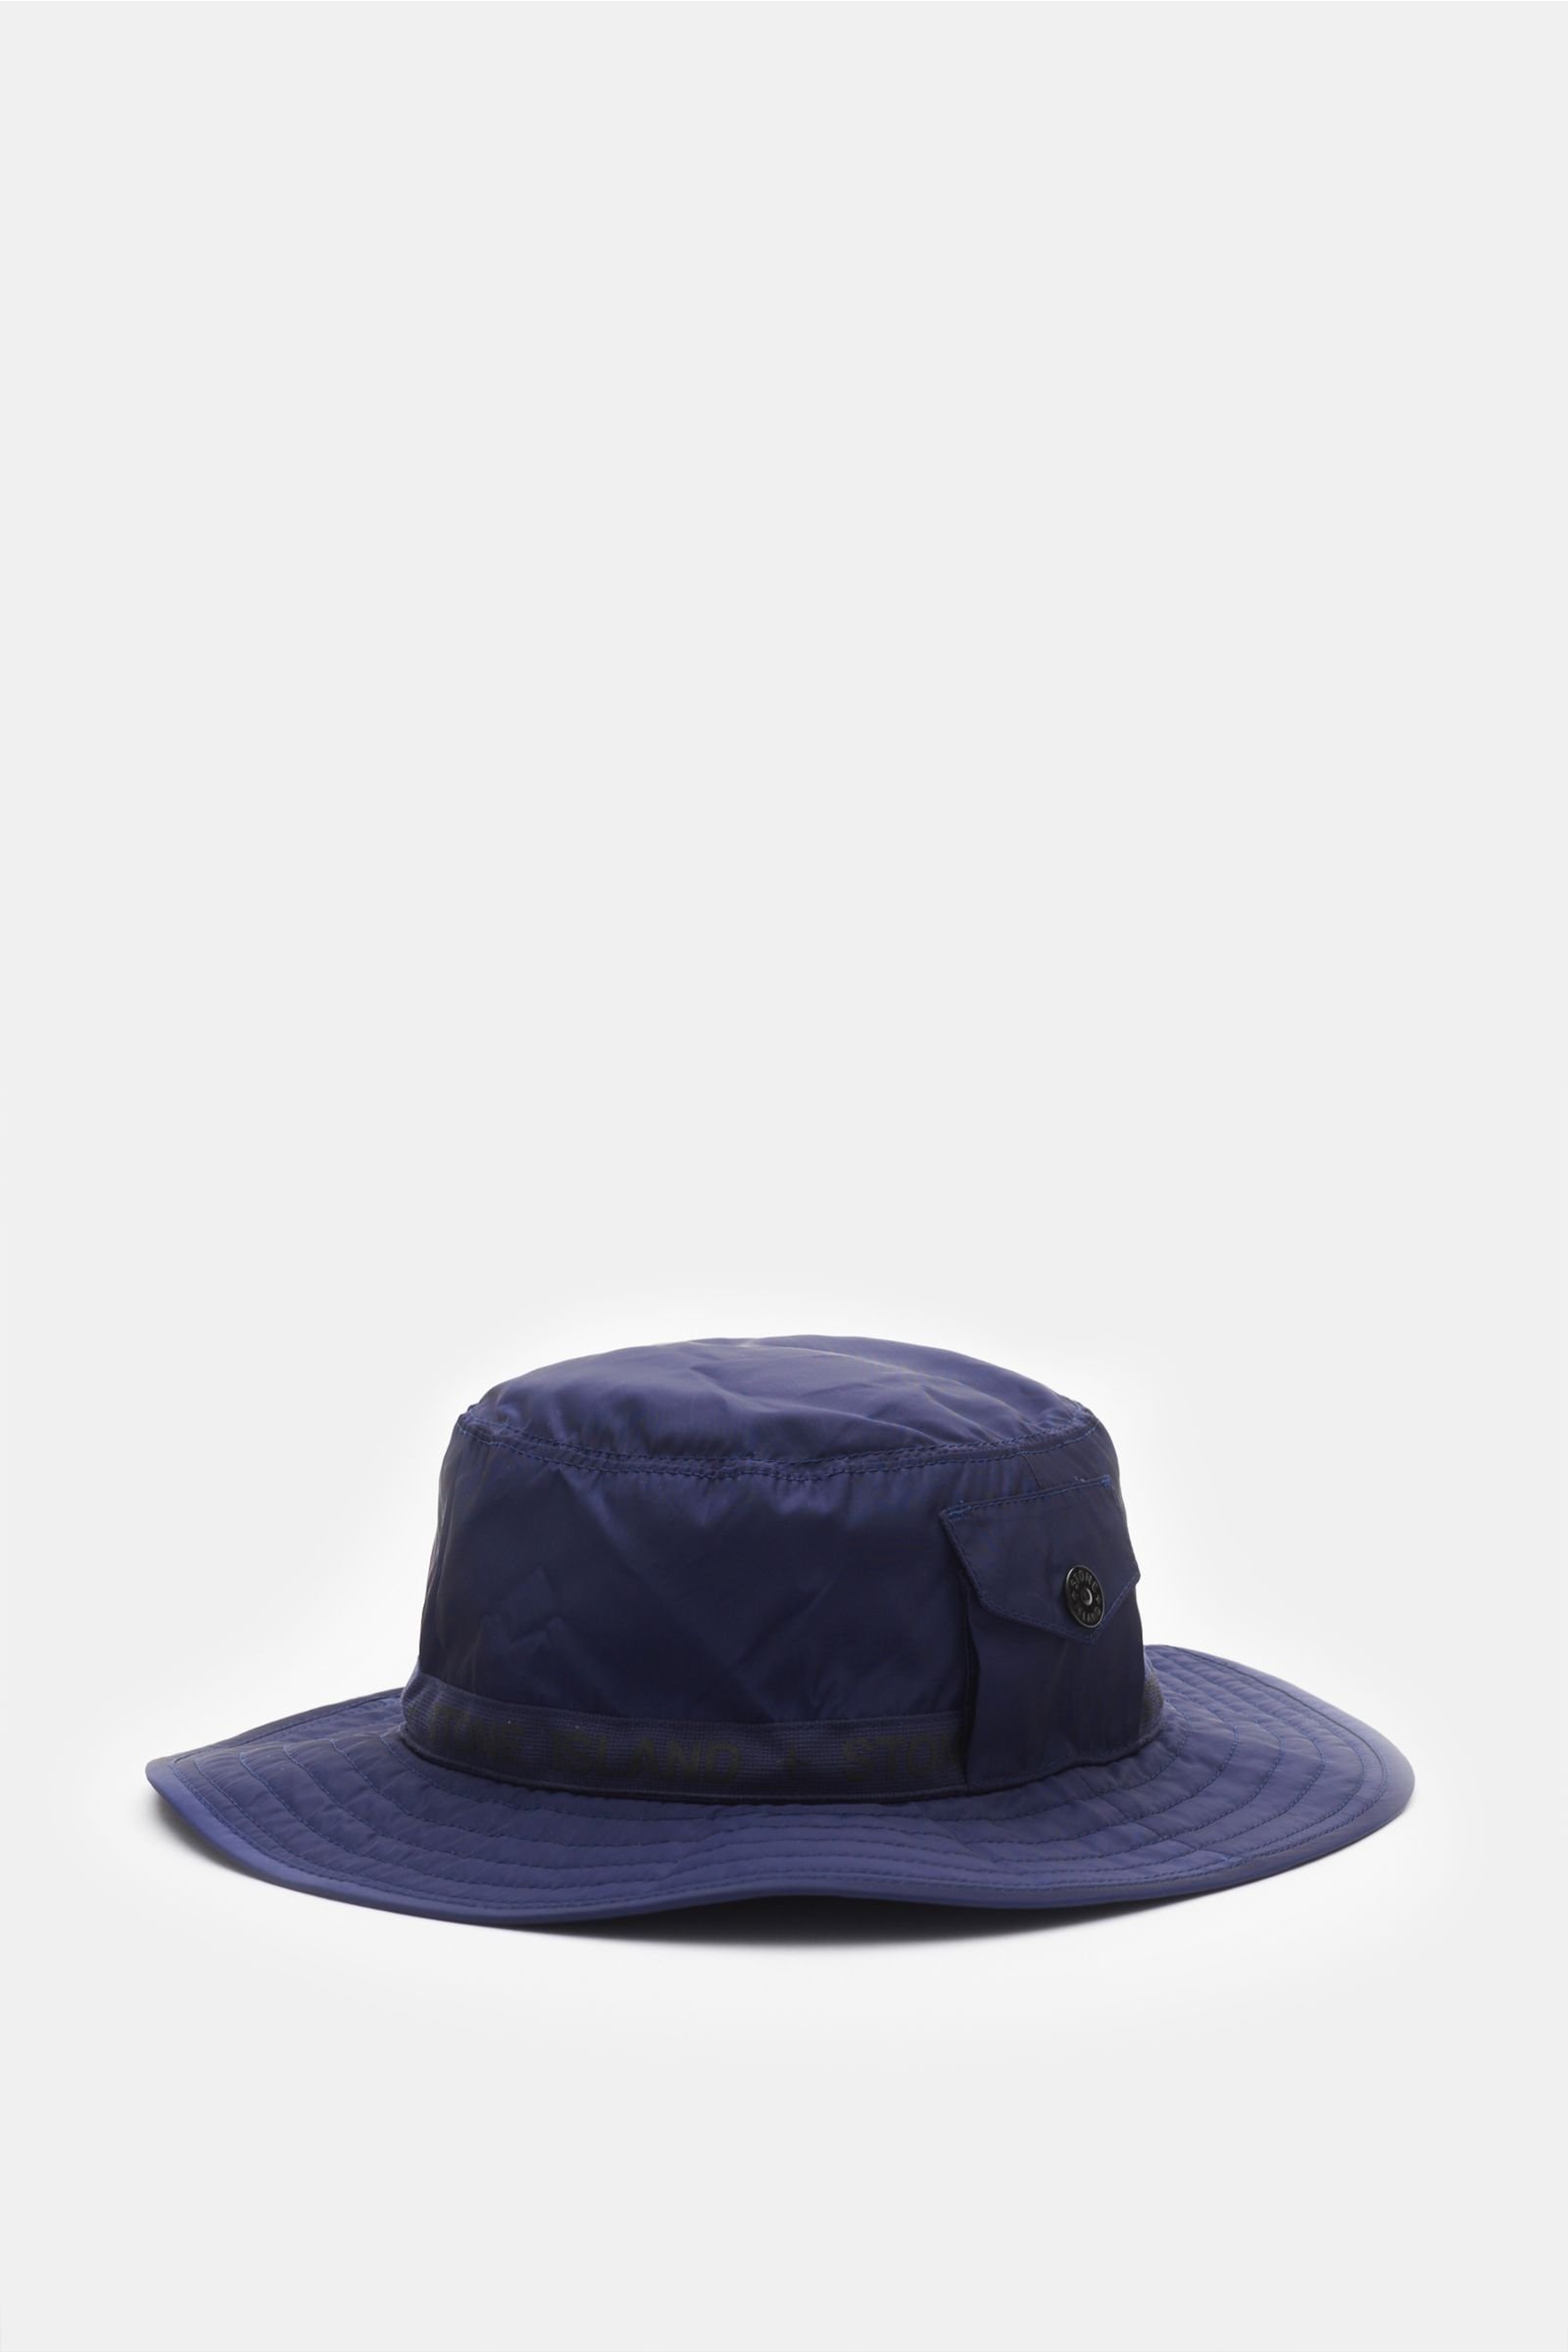 Bucket hat dark blue